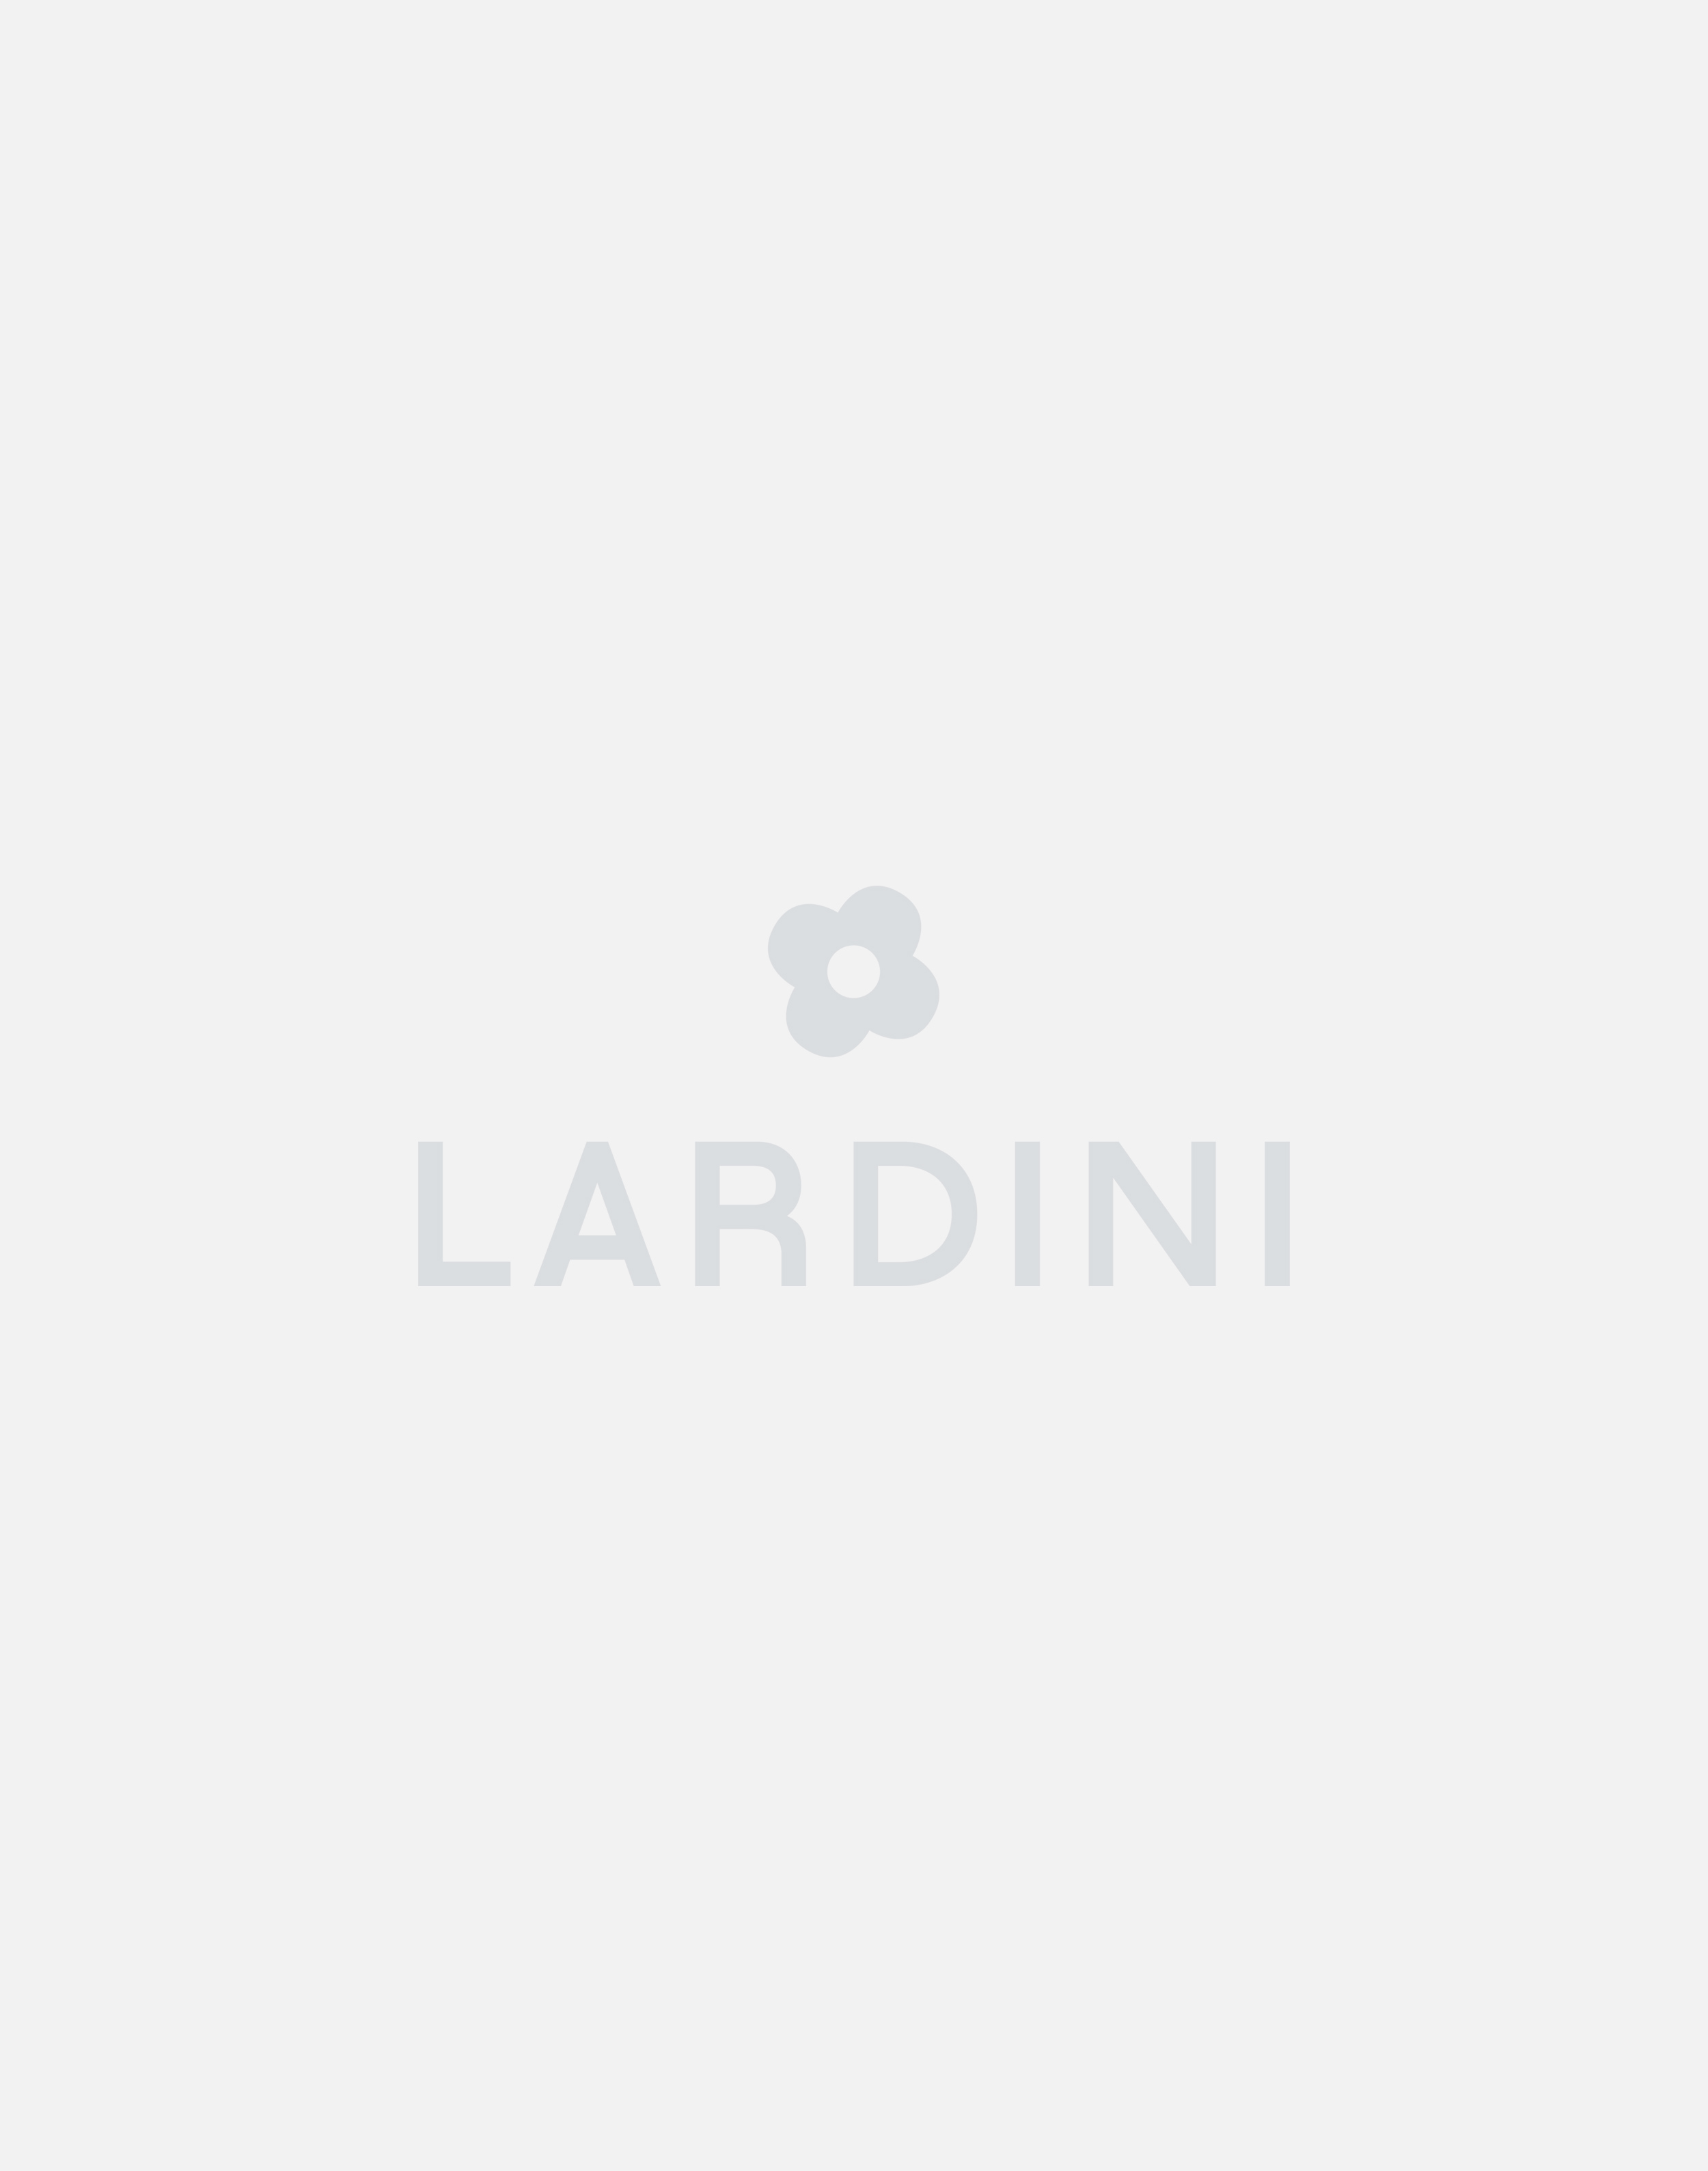 Cream knit jacket - Luigi Lardini capsule 4